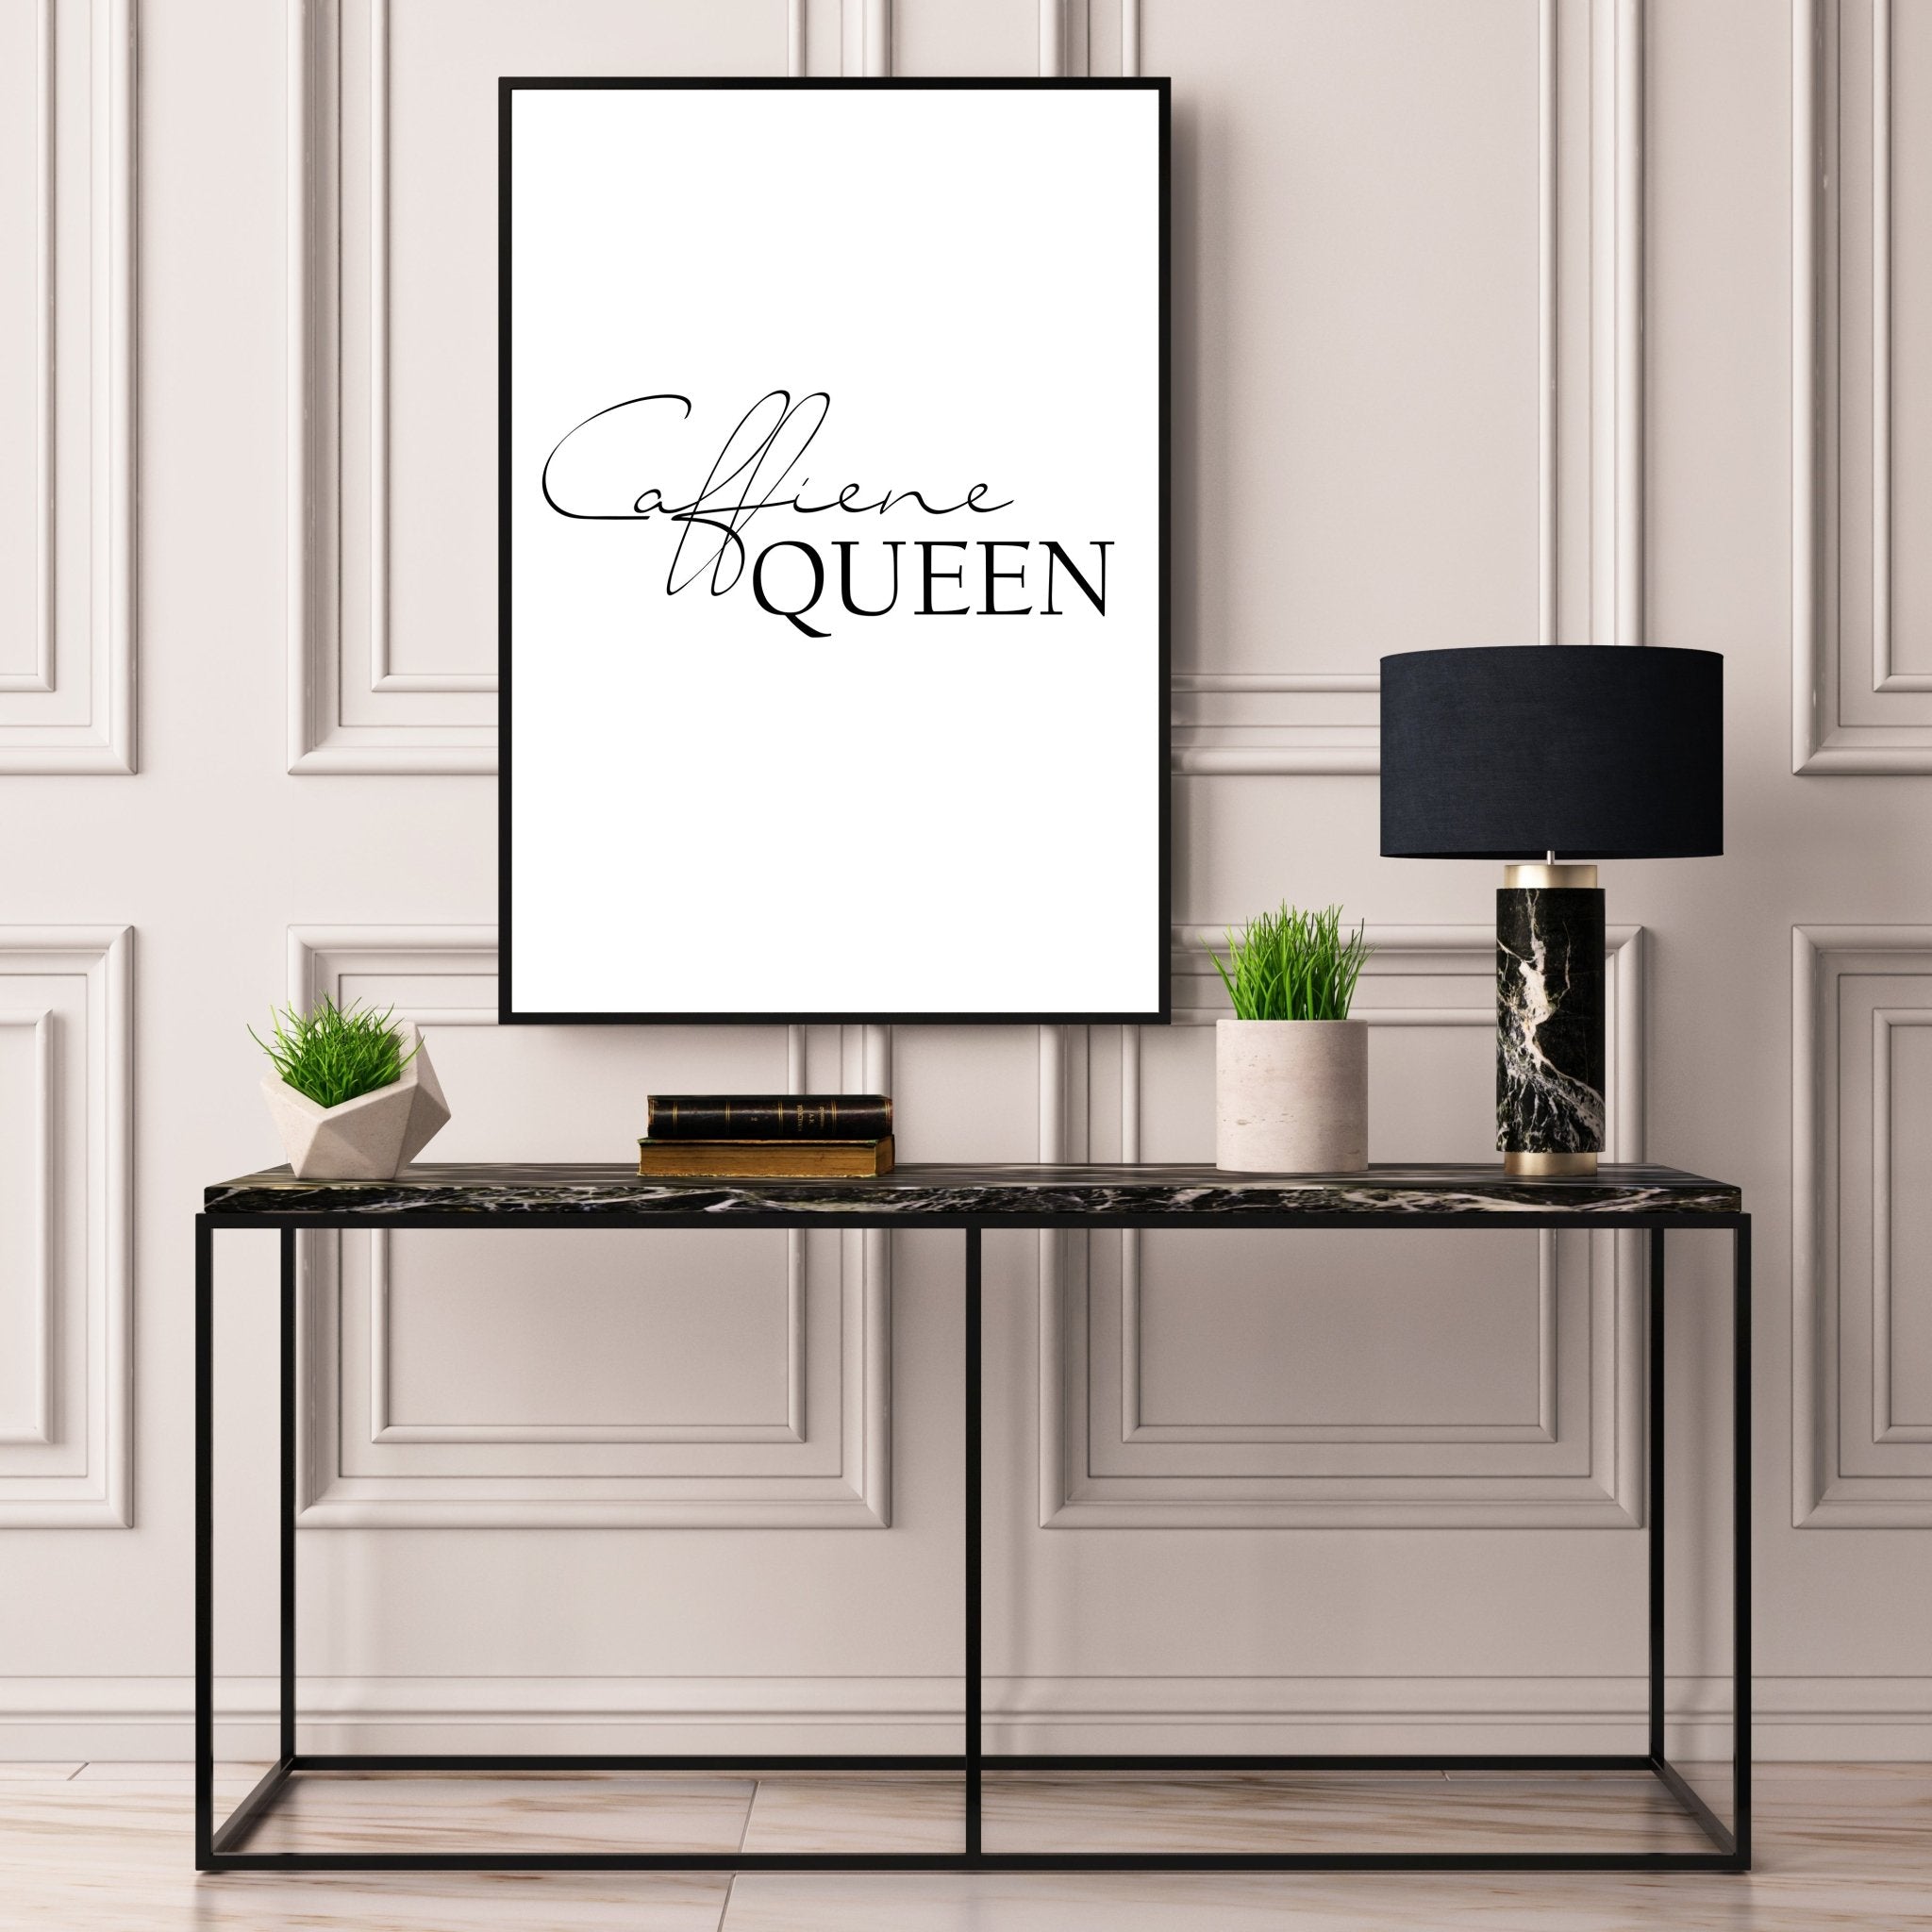 Caffeine Queen - D'Luxe Prints